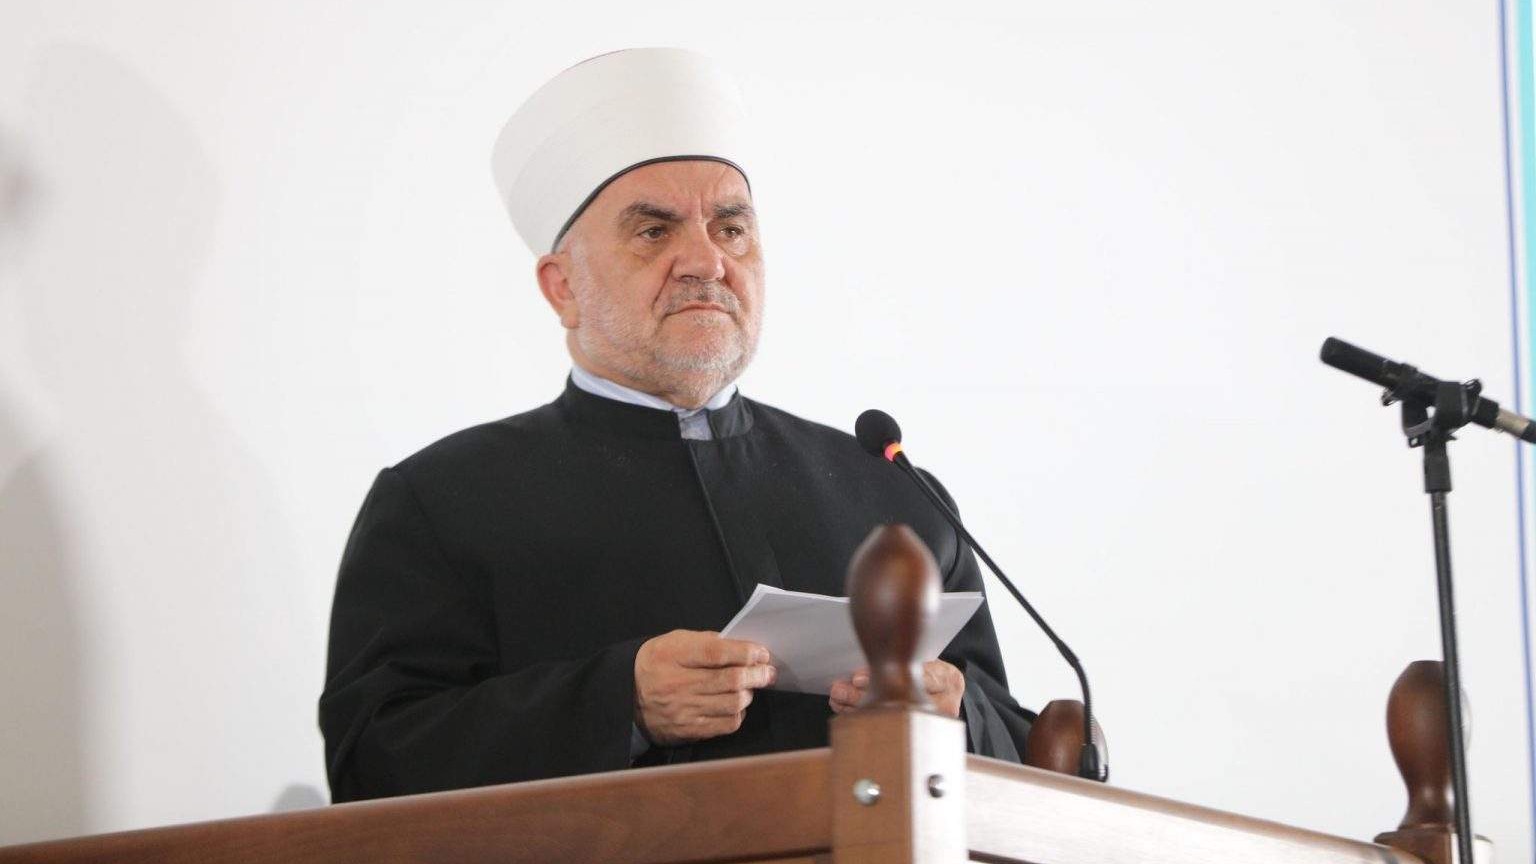 Muftija Dudić: Potrebna nam je čista vjera u Svemilosnog, koja će nas ujediniti